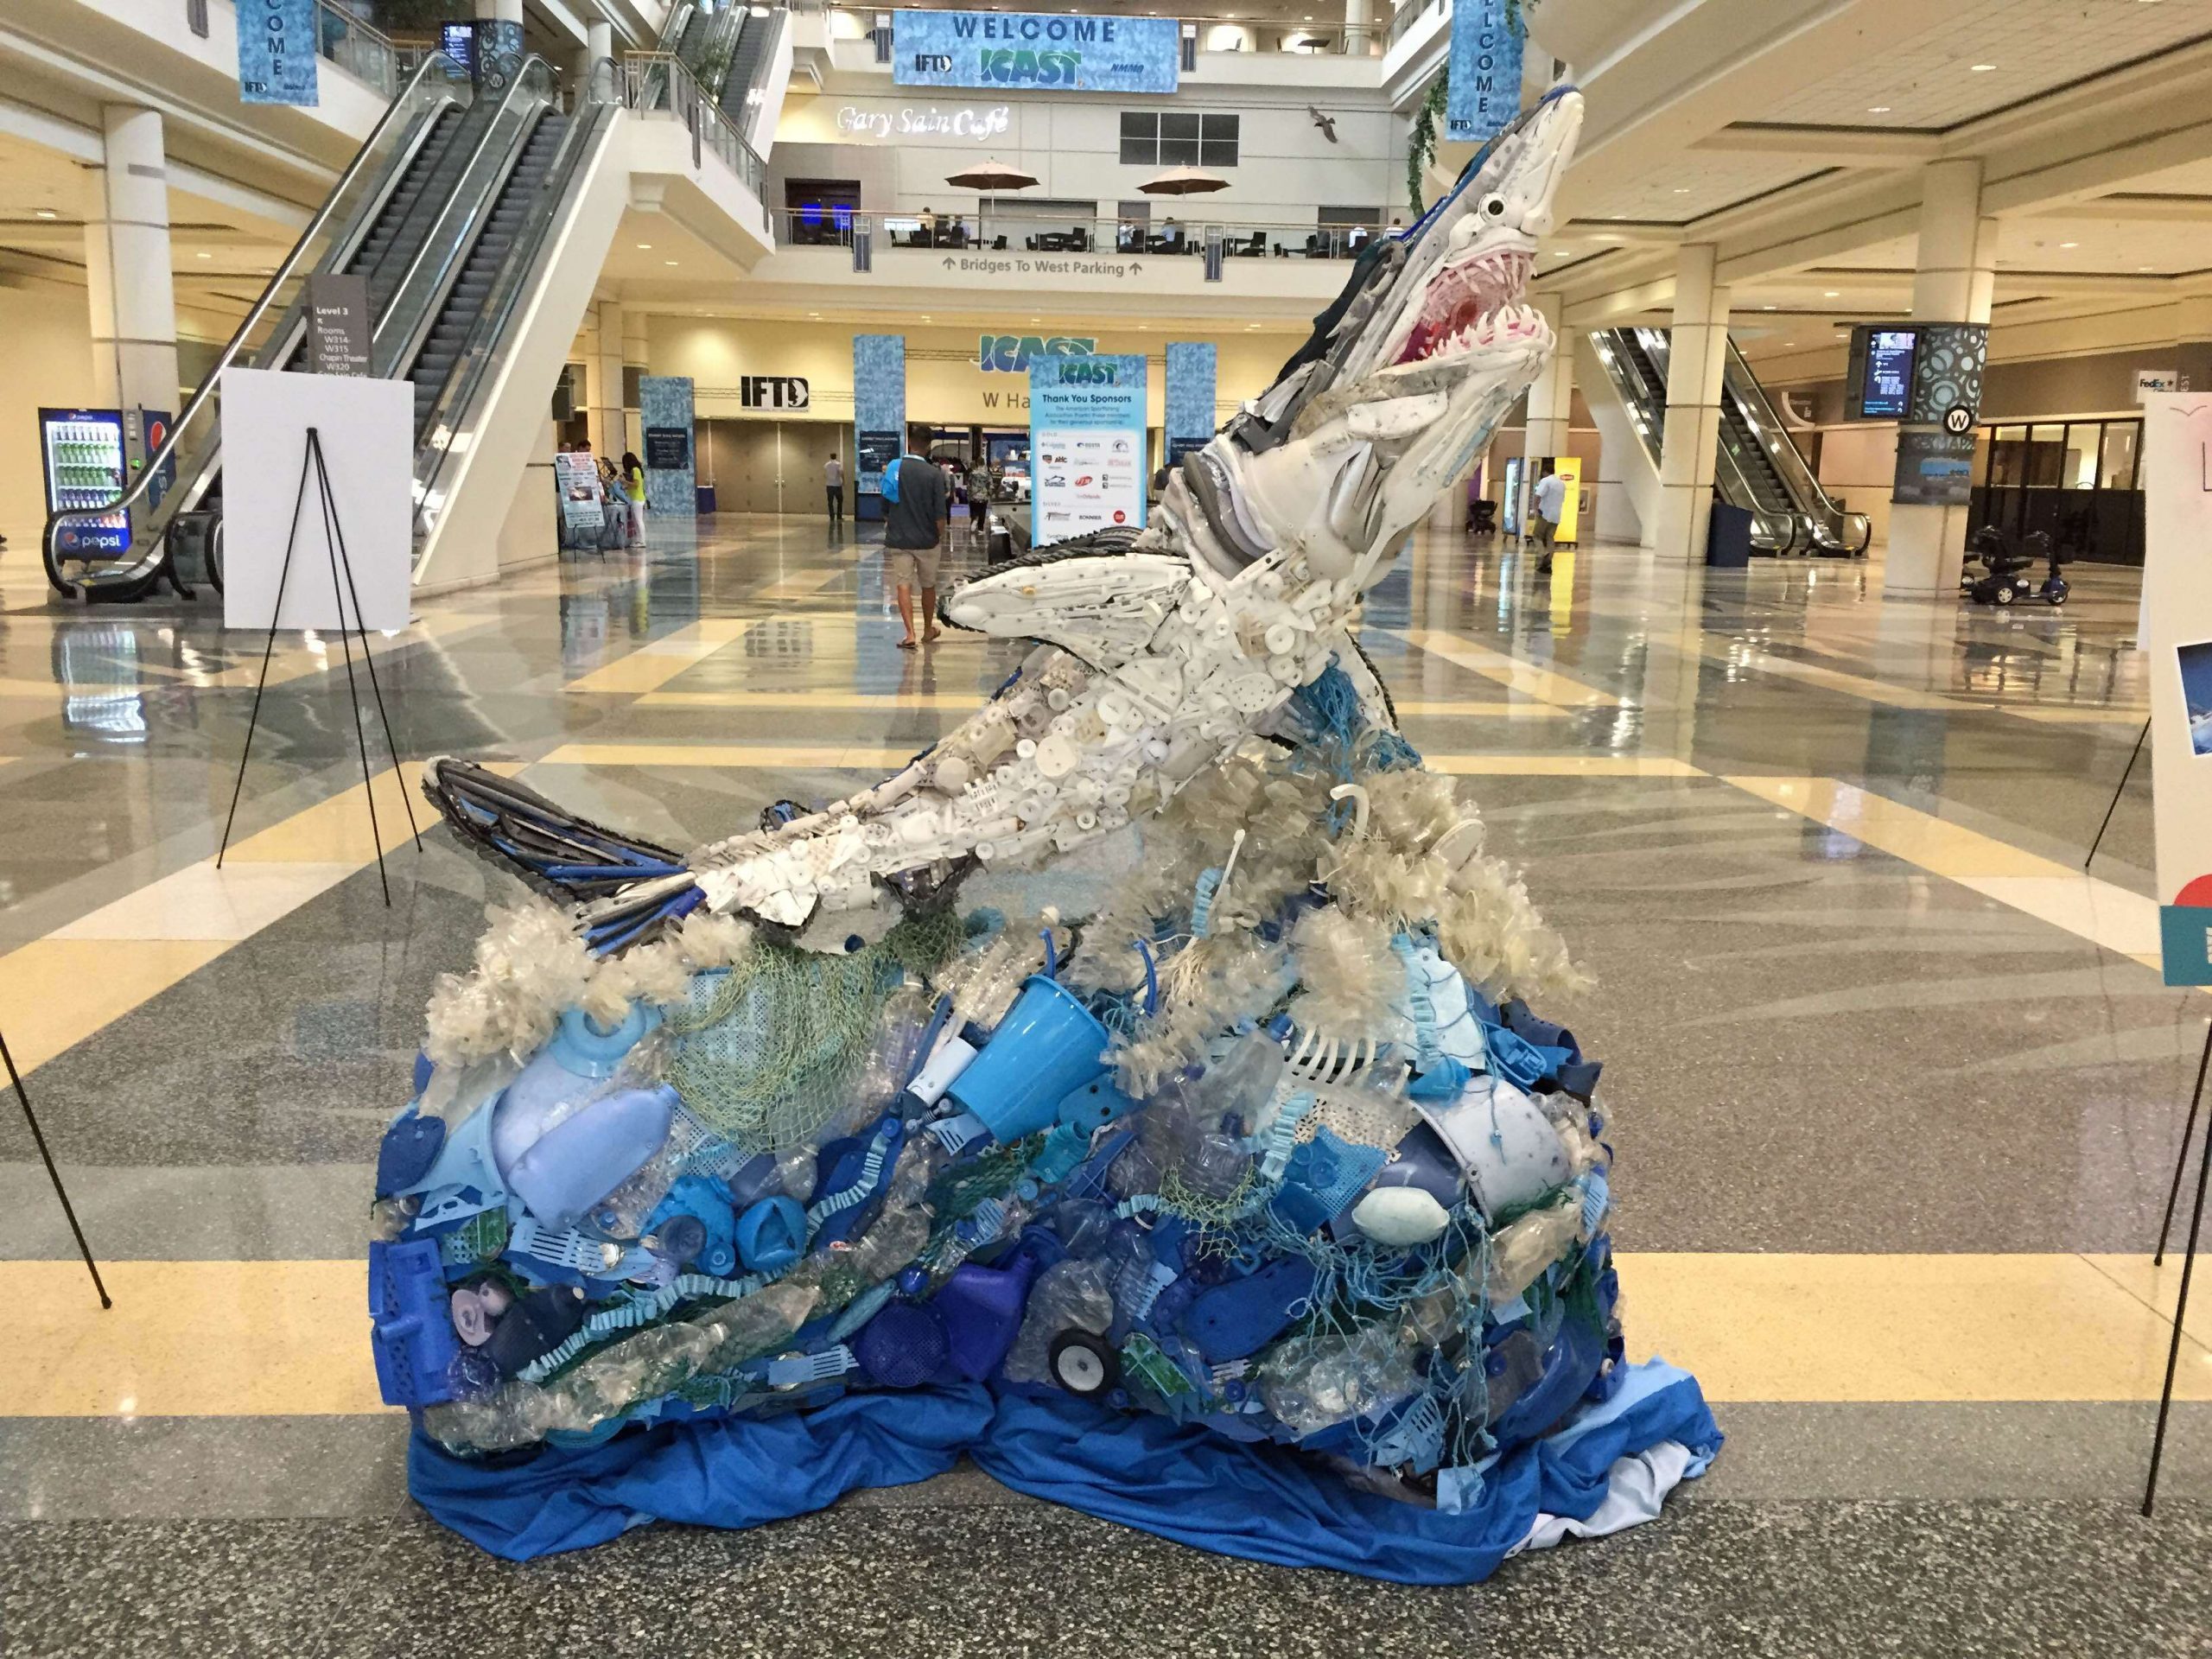 Each year, COSTAâs plastic sculpture reminds ICAST attendees about the importance of recycling plastics and keeping fisheries and waterways free of floating trash.